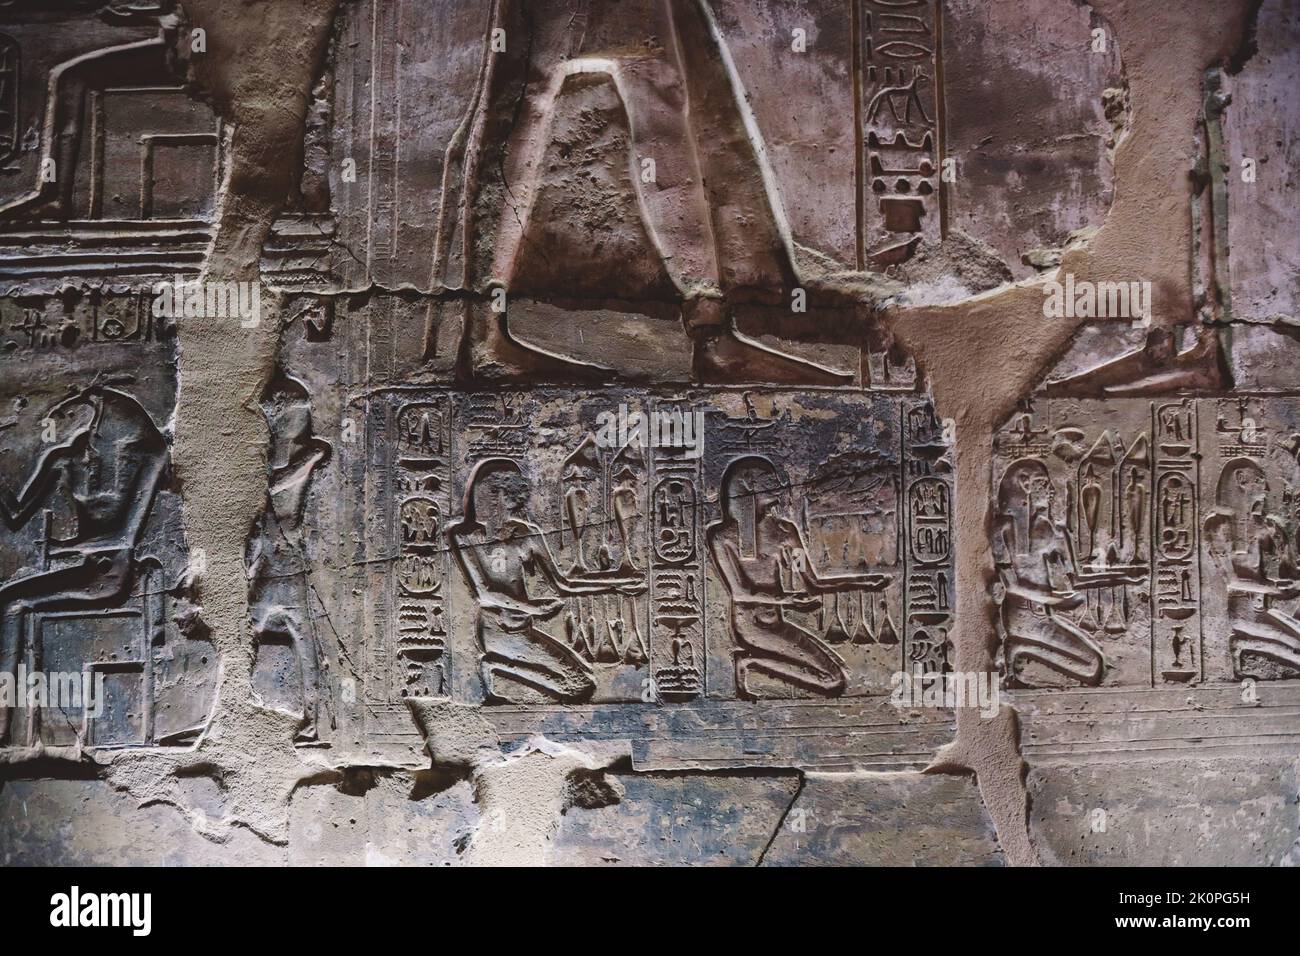 Ancien dessin égyptien sur les murs du temple de Seti I également connu comme le Grand Temple d'Abydos à Kharga, Egypte Banque D'Images